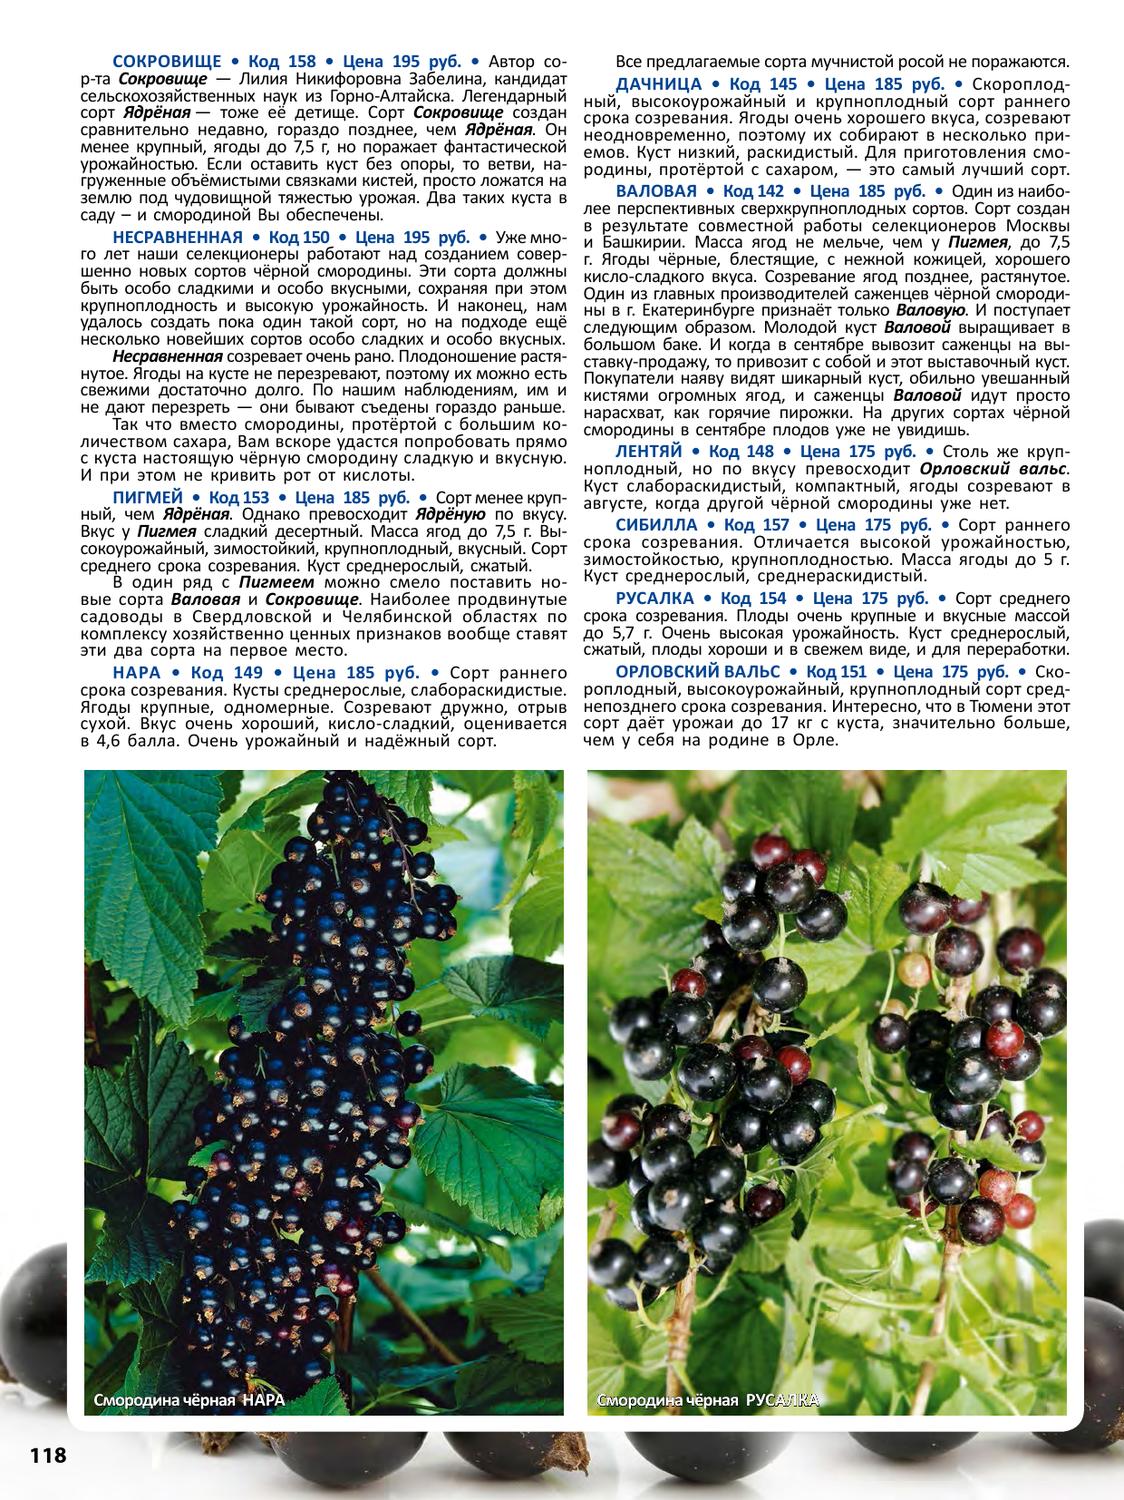 Смородина геркулес (геракл) чёрная: описание сорта с фото, урожайность, вкусовые качества